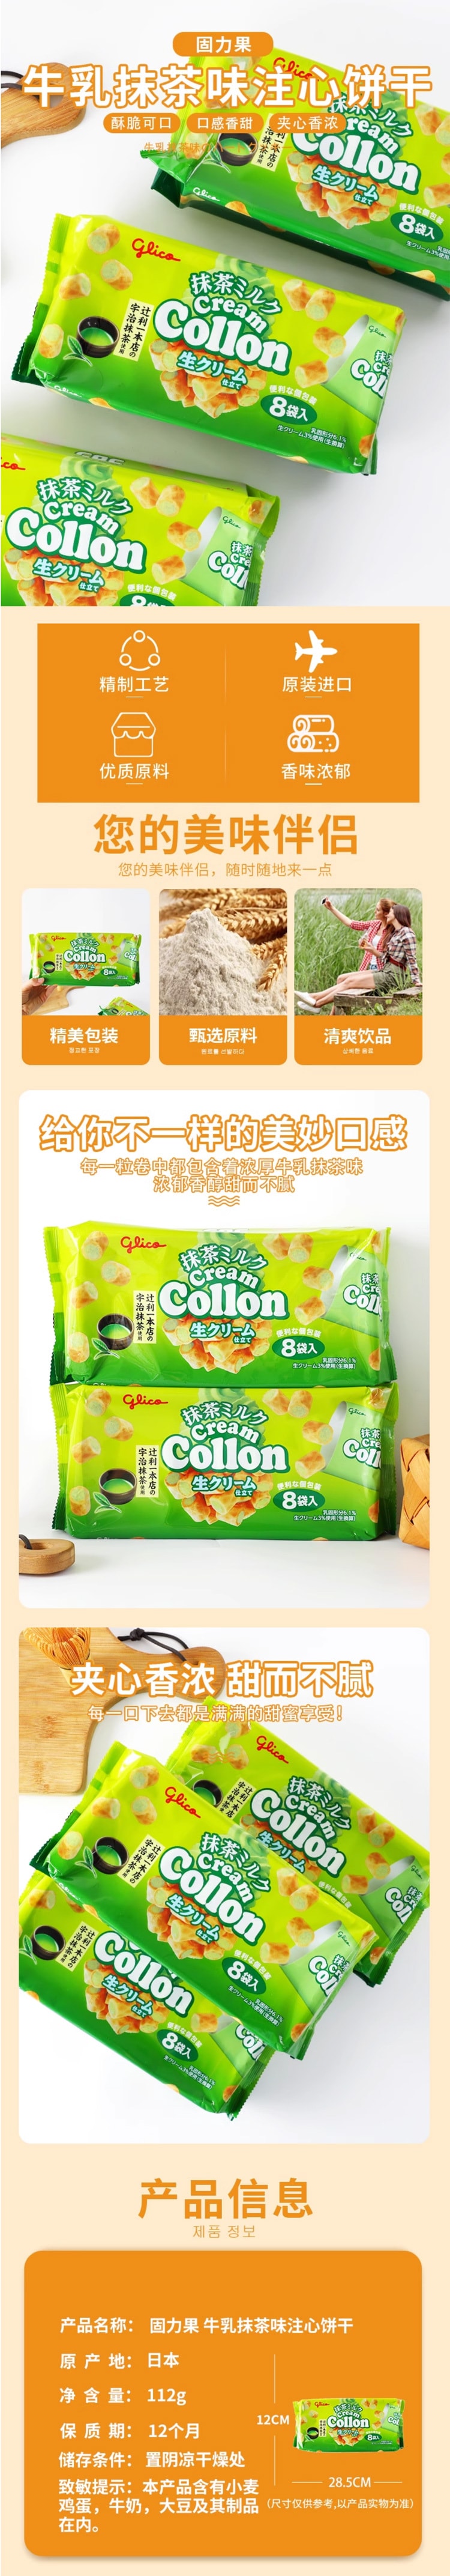 【日本直邮】Glico格力高 Collon 抹茶牛奶卷 8袋入